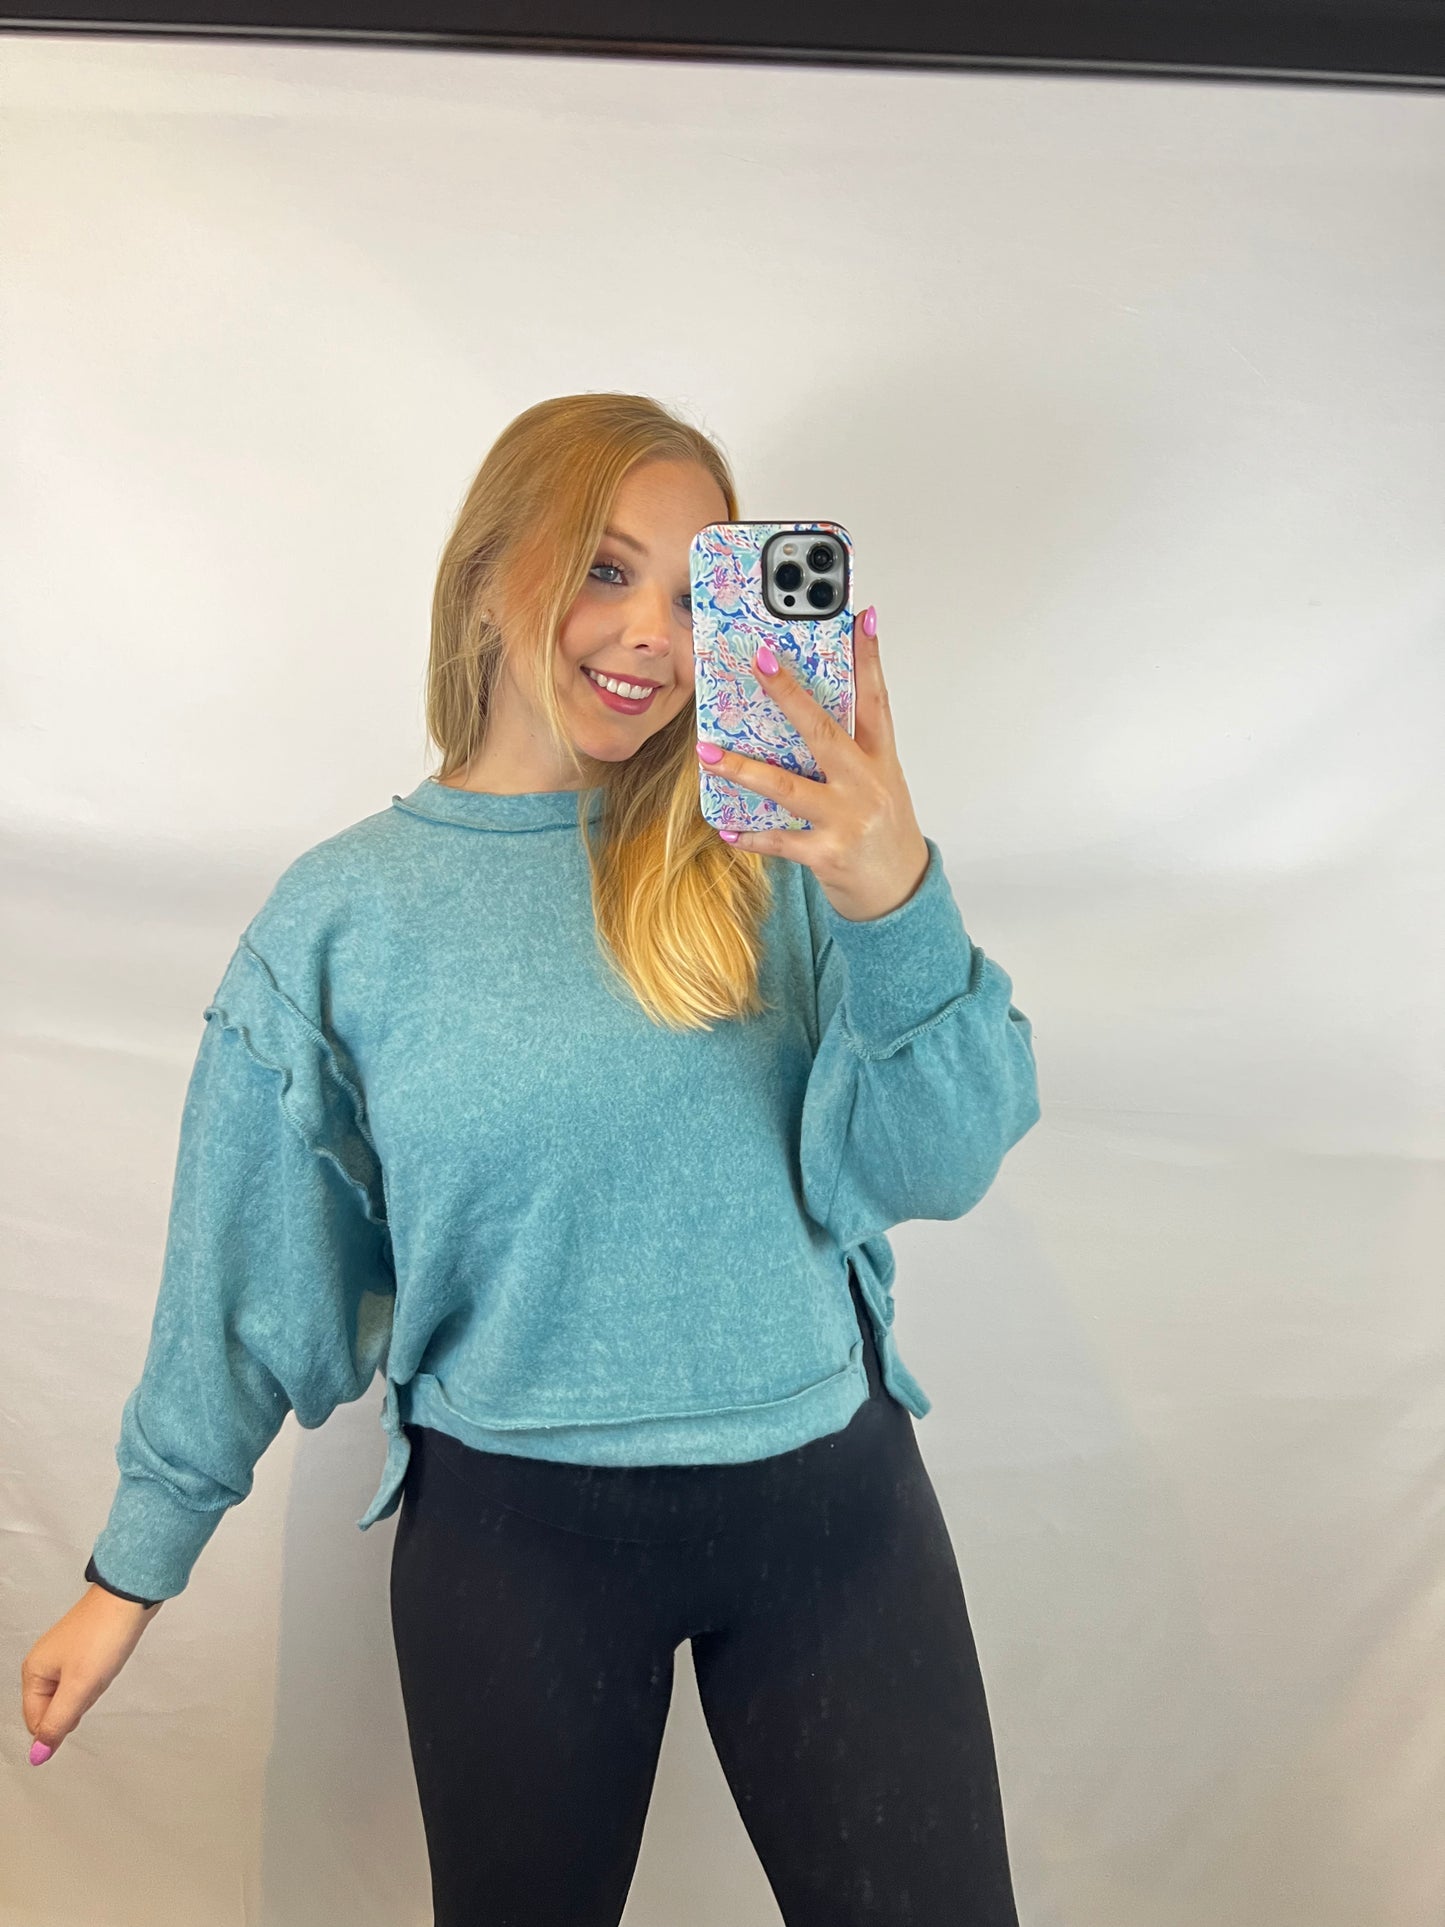 Brushed Melange Hacci Oversized Sweater